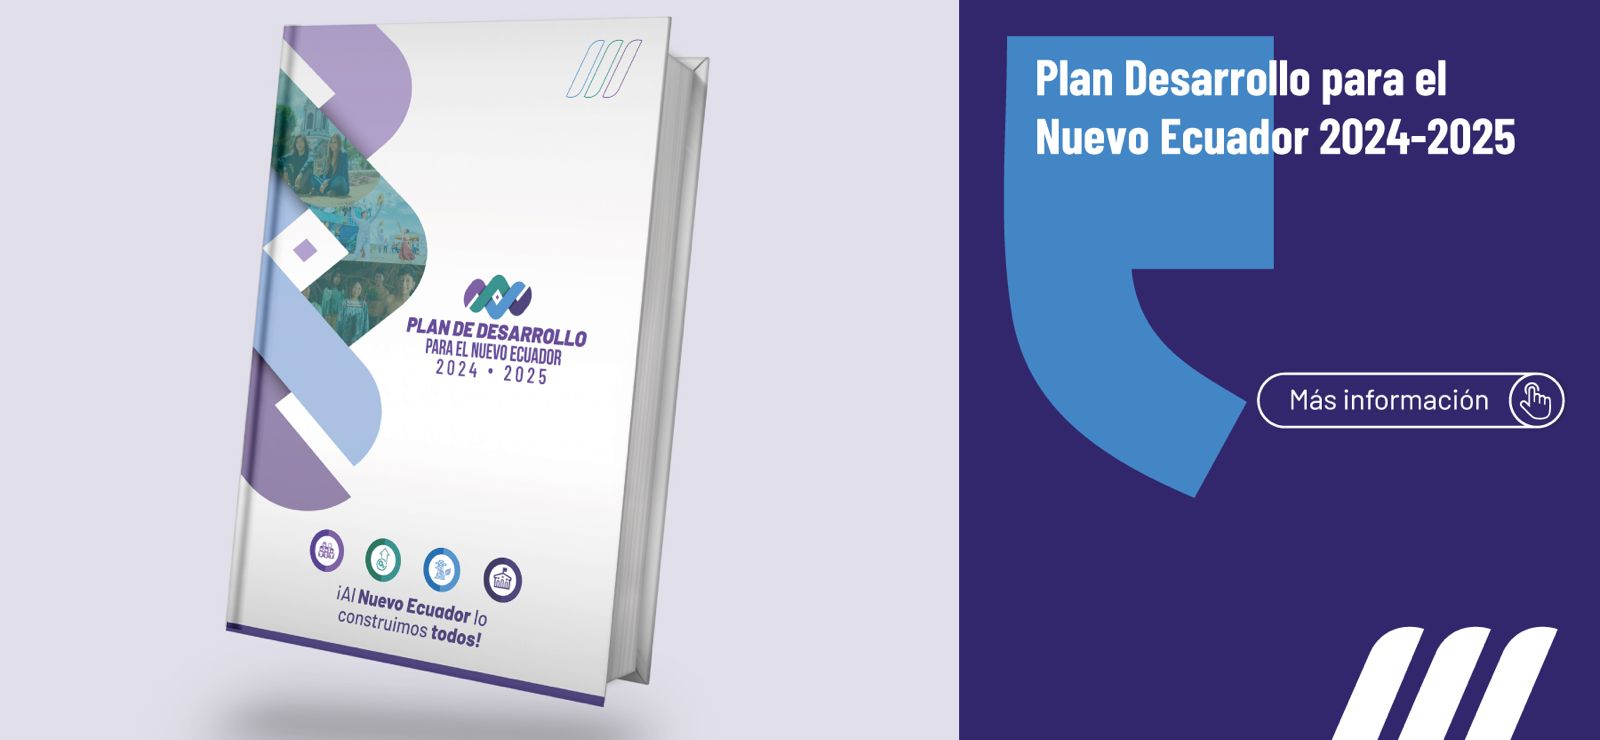 Está disponible el Plan de Desarrollo para el Nuevo Ecuador 2024-2025